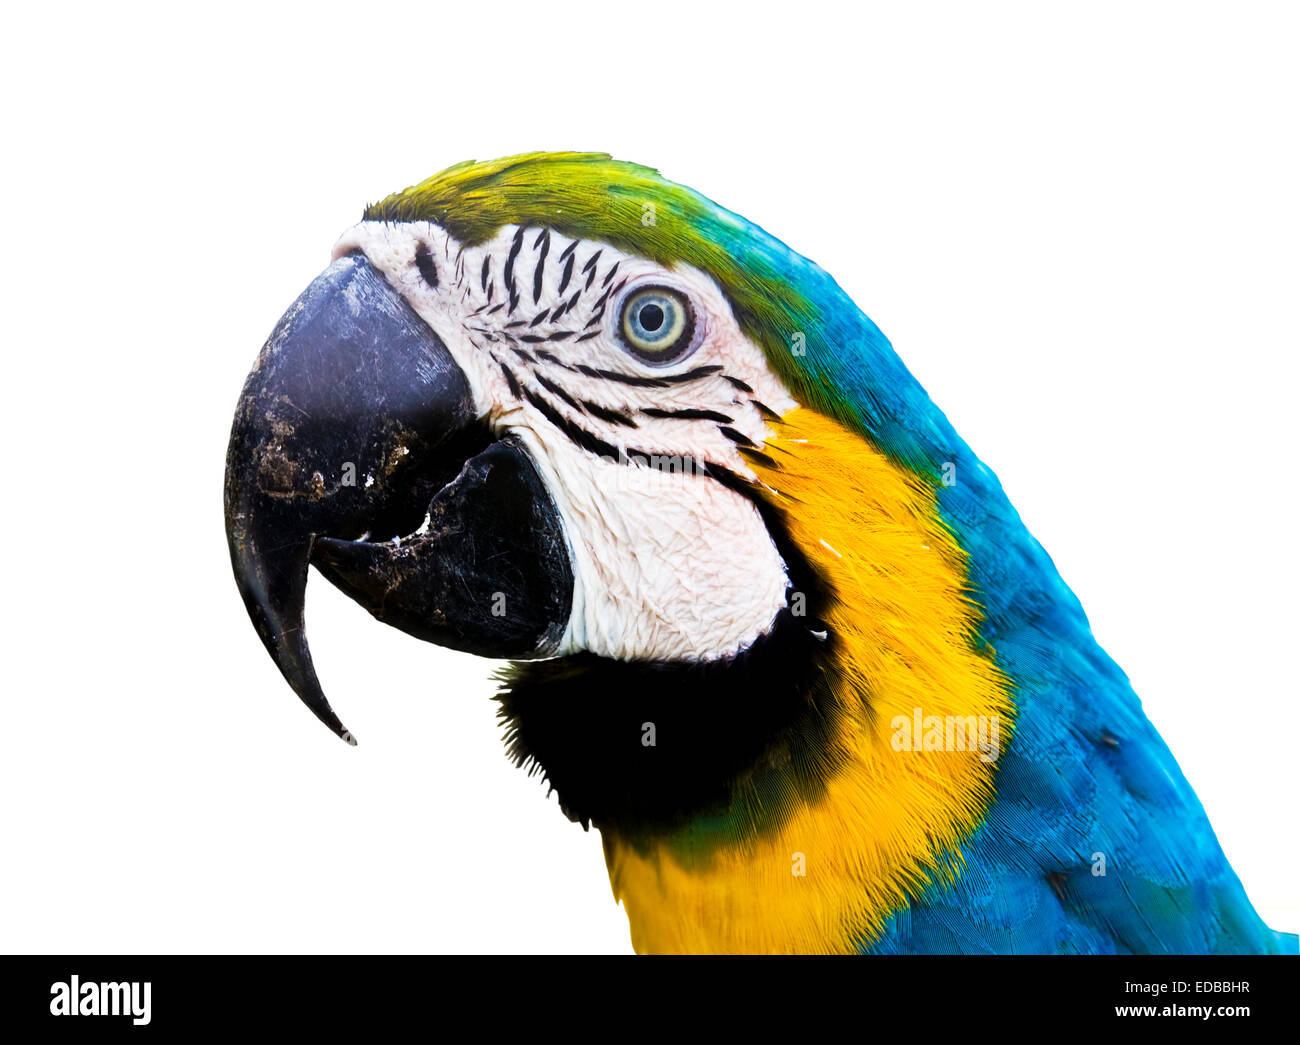 Papagei Ara Arauna, blau und Gelb Farben, isoliert. Der größte Papagei lebt  in Südamerika Stockfotografie - Alamy